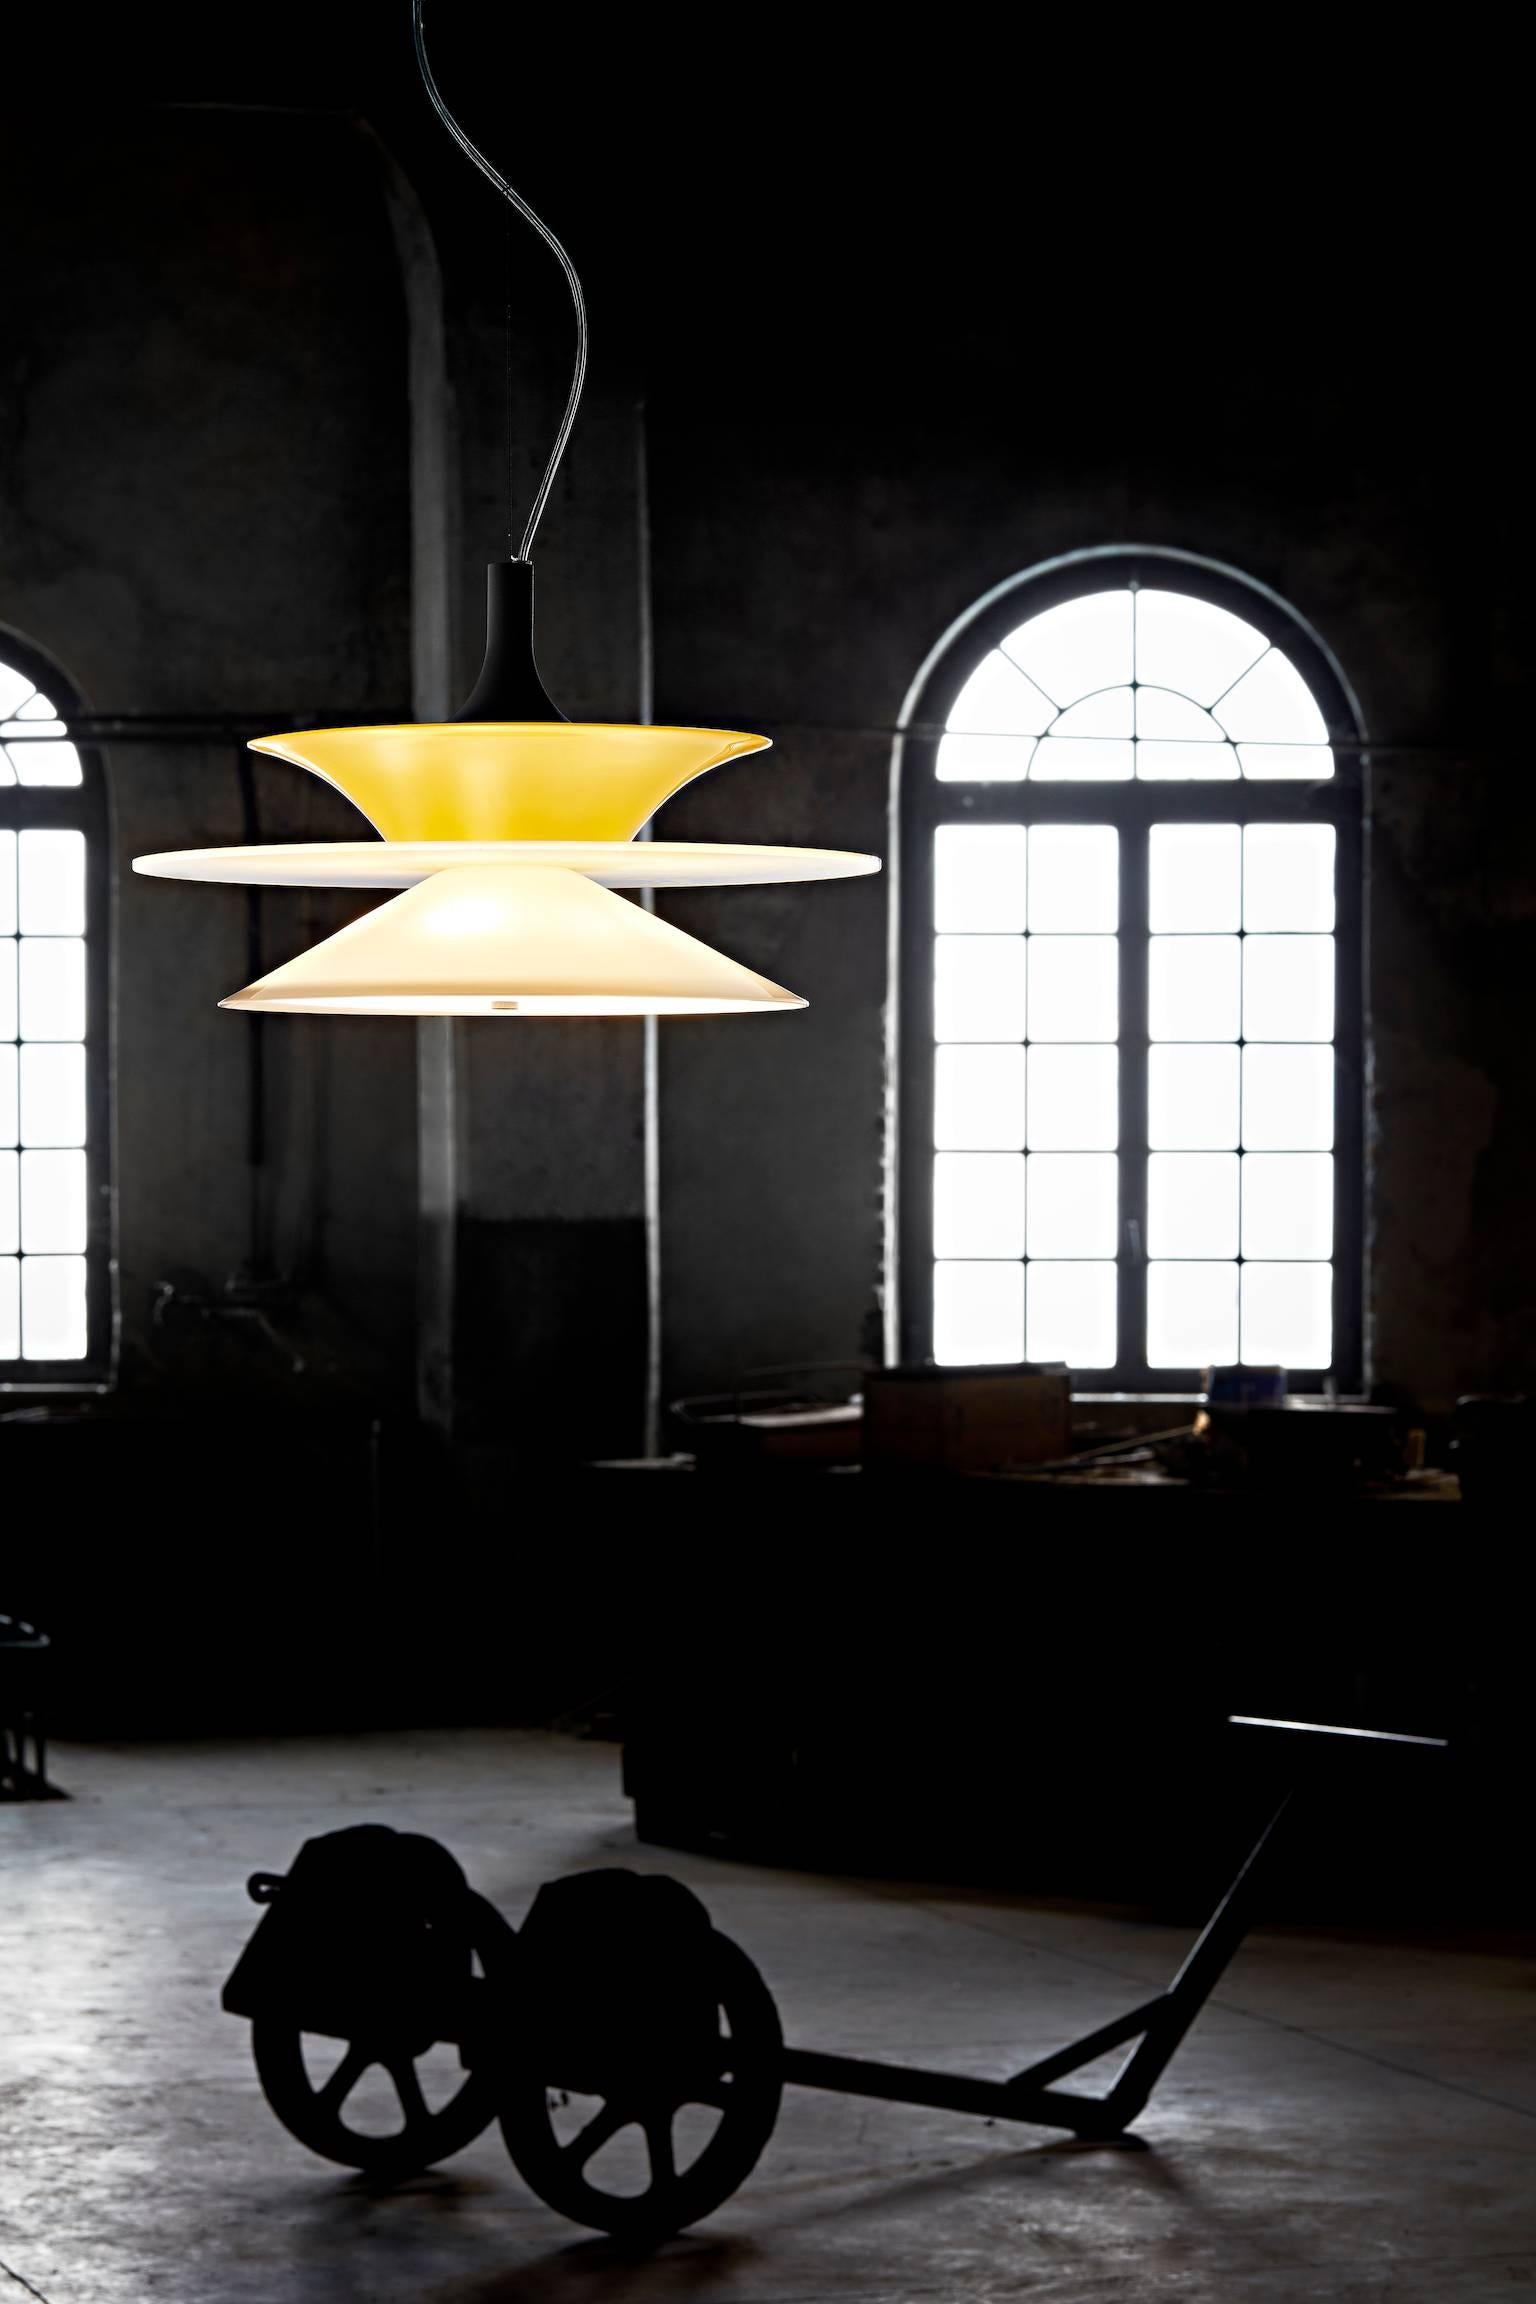 Lungomare - das neue Beleuchtungsprojekt von Carlo Moretti.

Diese Kollektion wurde zusammen mit dem Designer Diego Chilo in einem synergetischen Workshop mit dem Glasmeister entwickelt. In der 